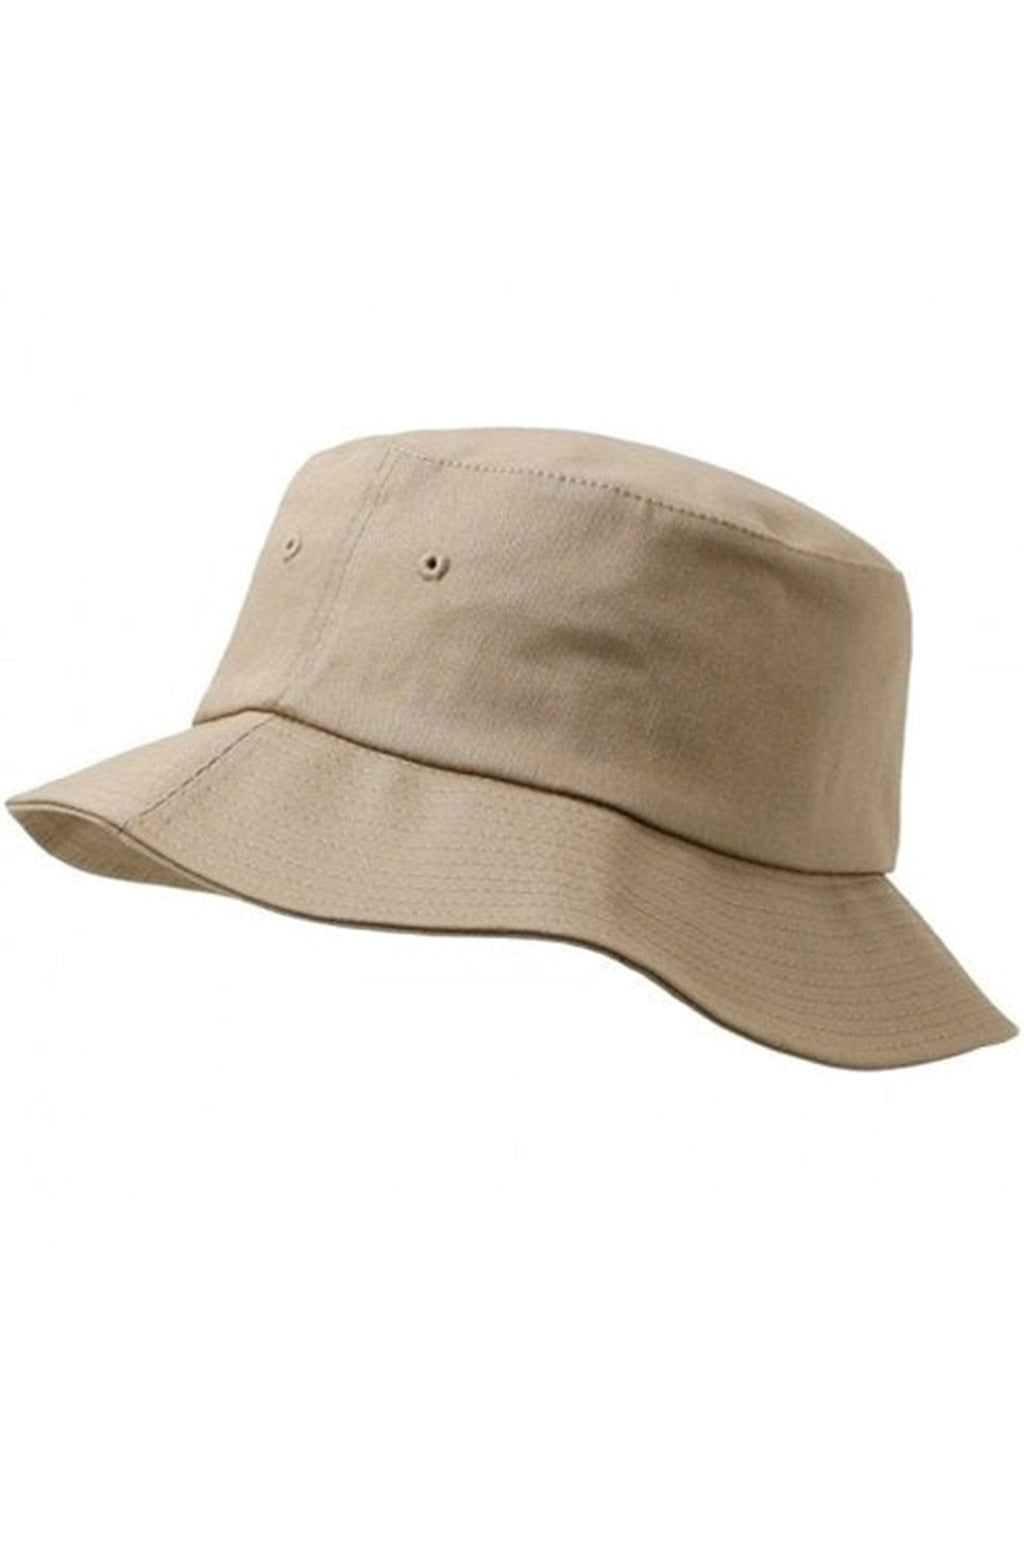 Καπέλο κουβάδας - Χρωματισμένο με άμμο